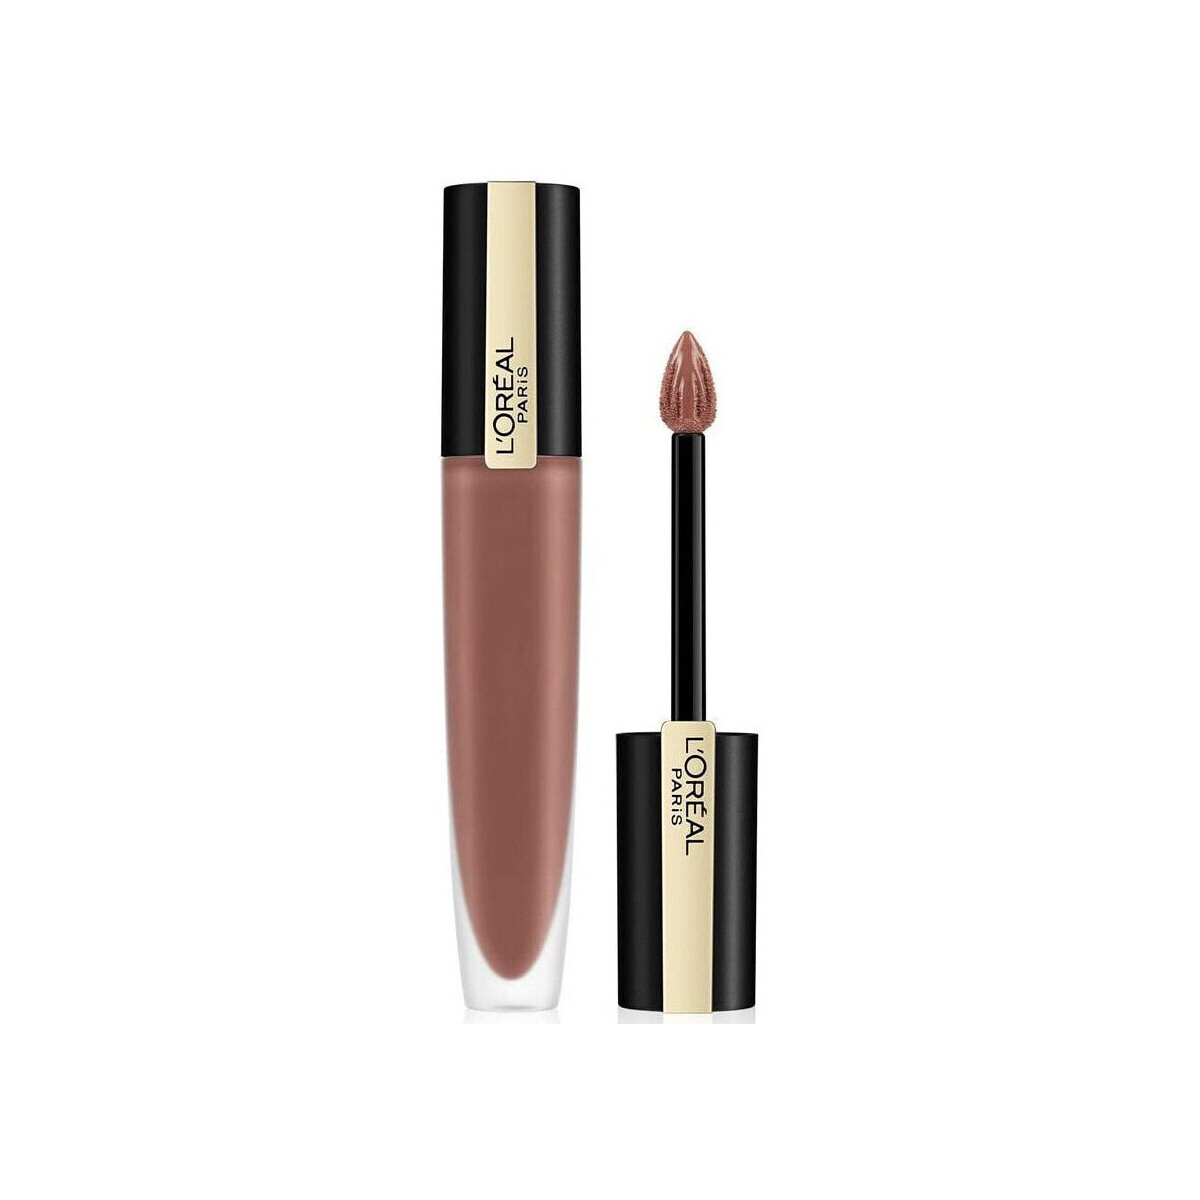 Beauty Damen Lippenstift L'oréal Signature Matte Liquid Lipstick Braun